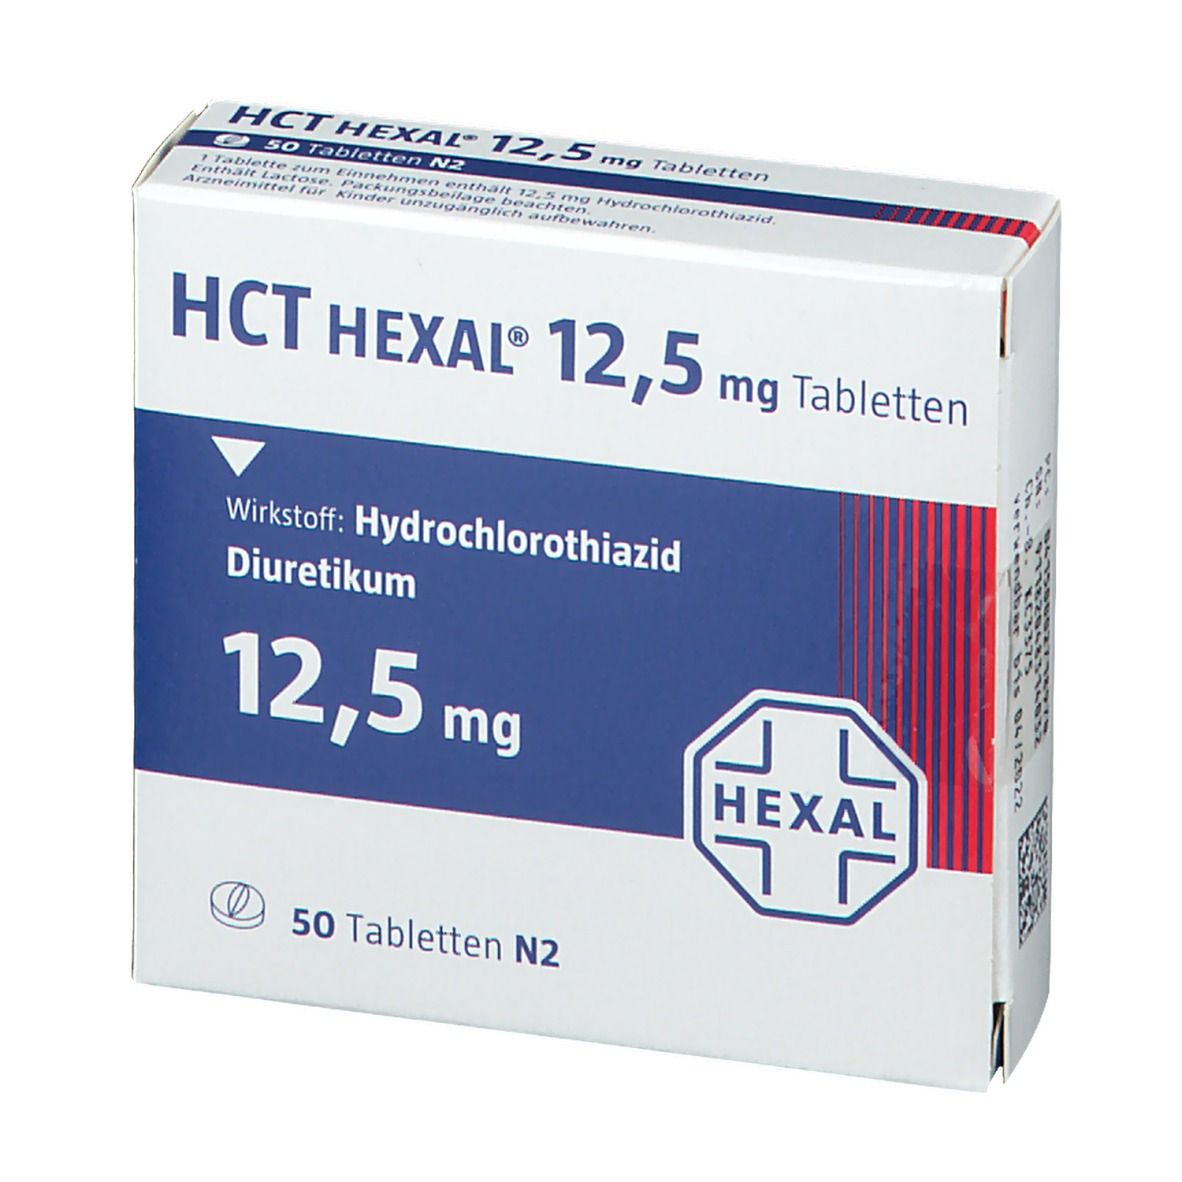 HCT HEXAL® 12,5 mg